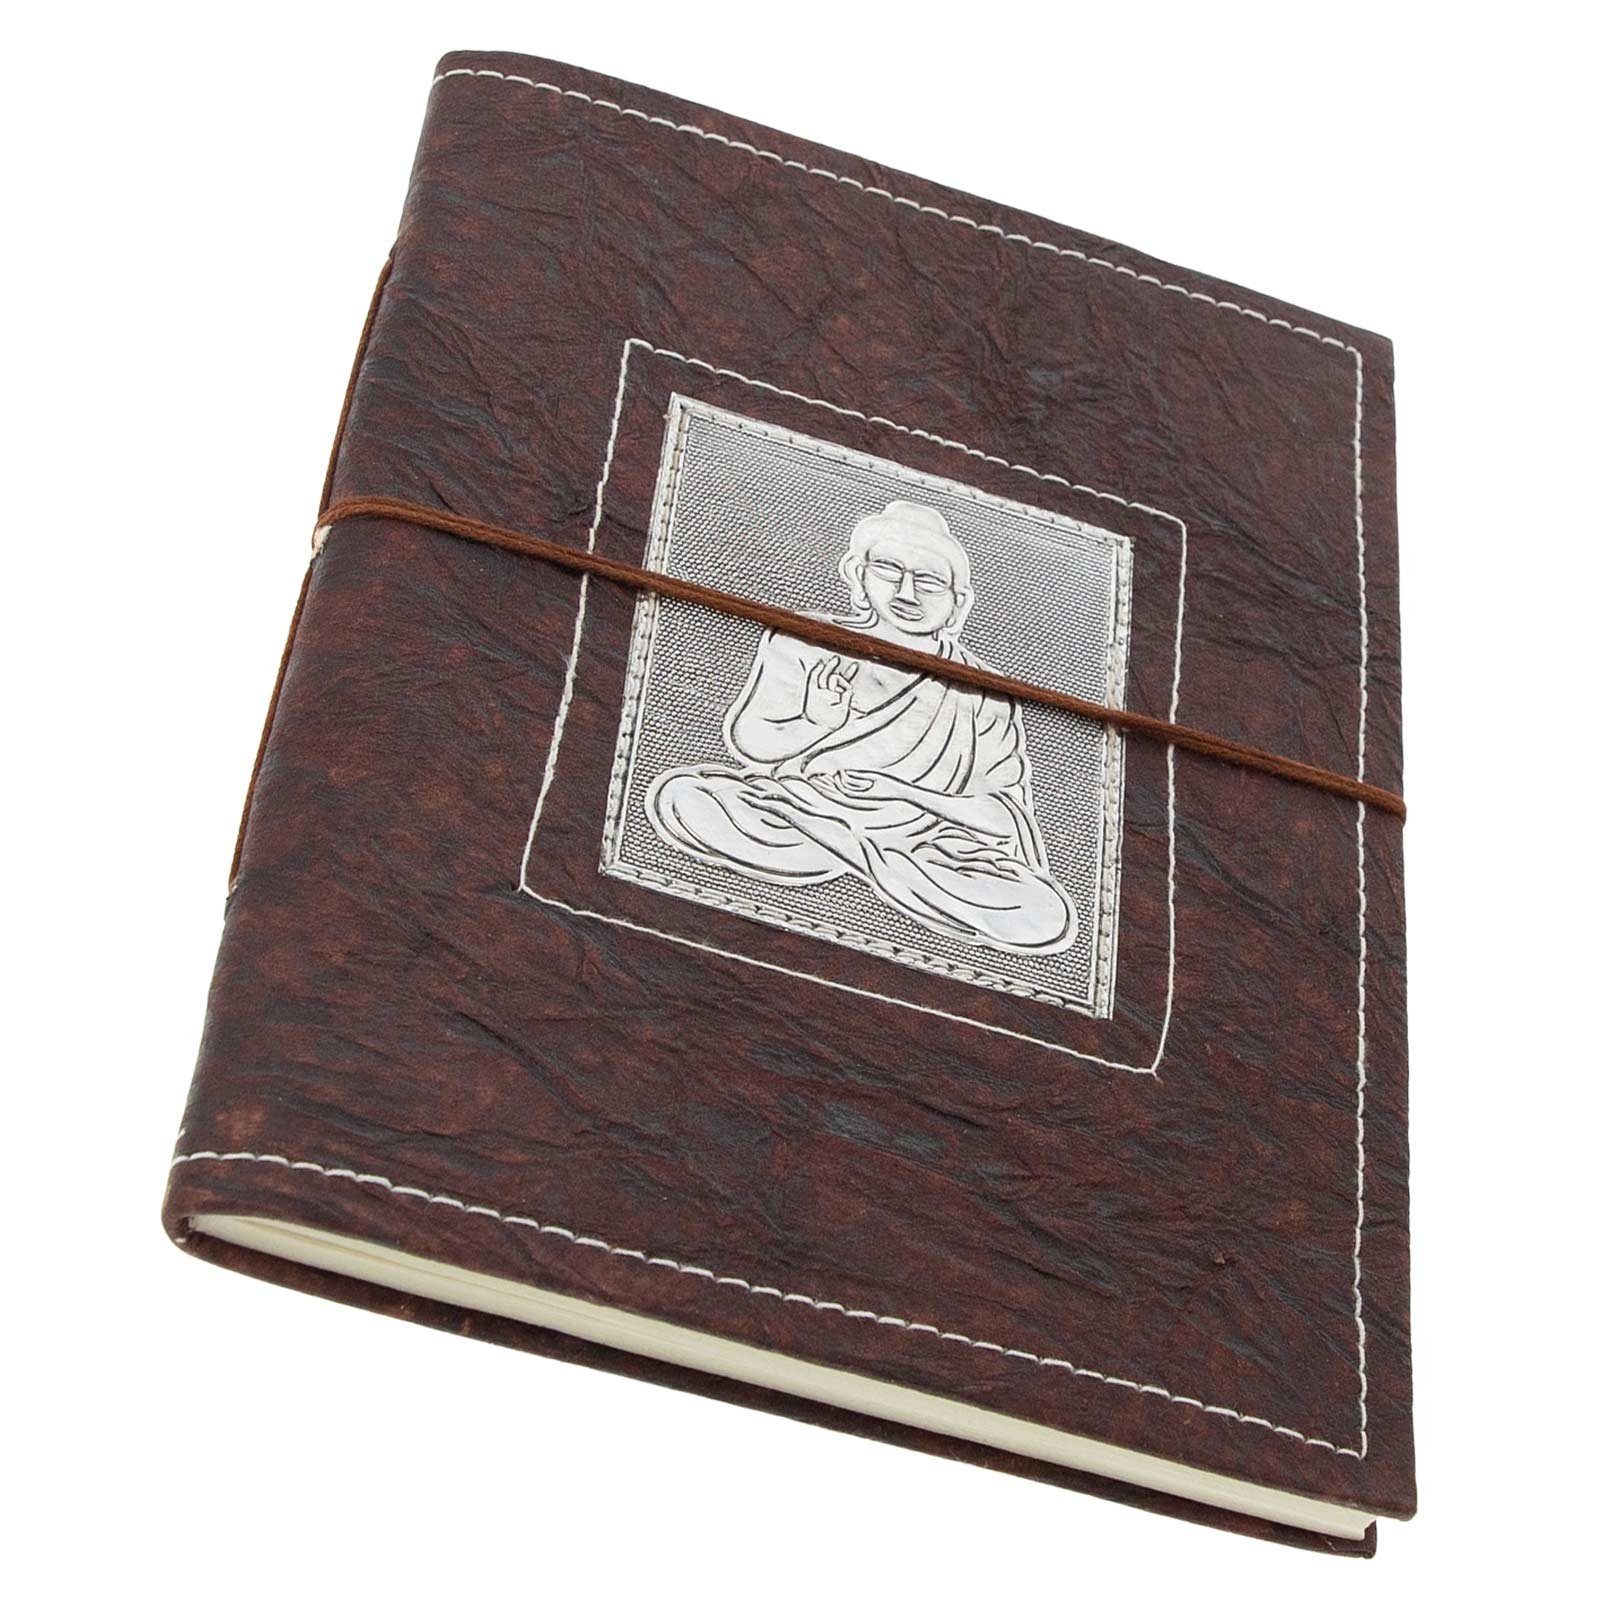 KUNST UND MAGIE Tagebuch Tagebuch Buddha handgefertigt Notizbuch 25x18cm XL Poesiealbum